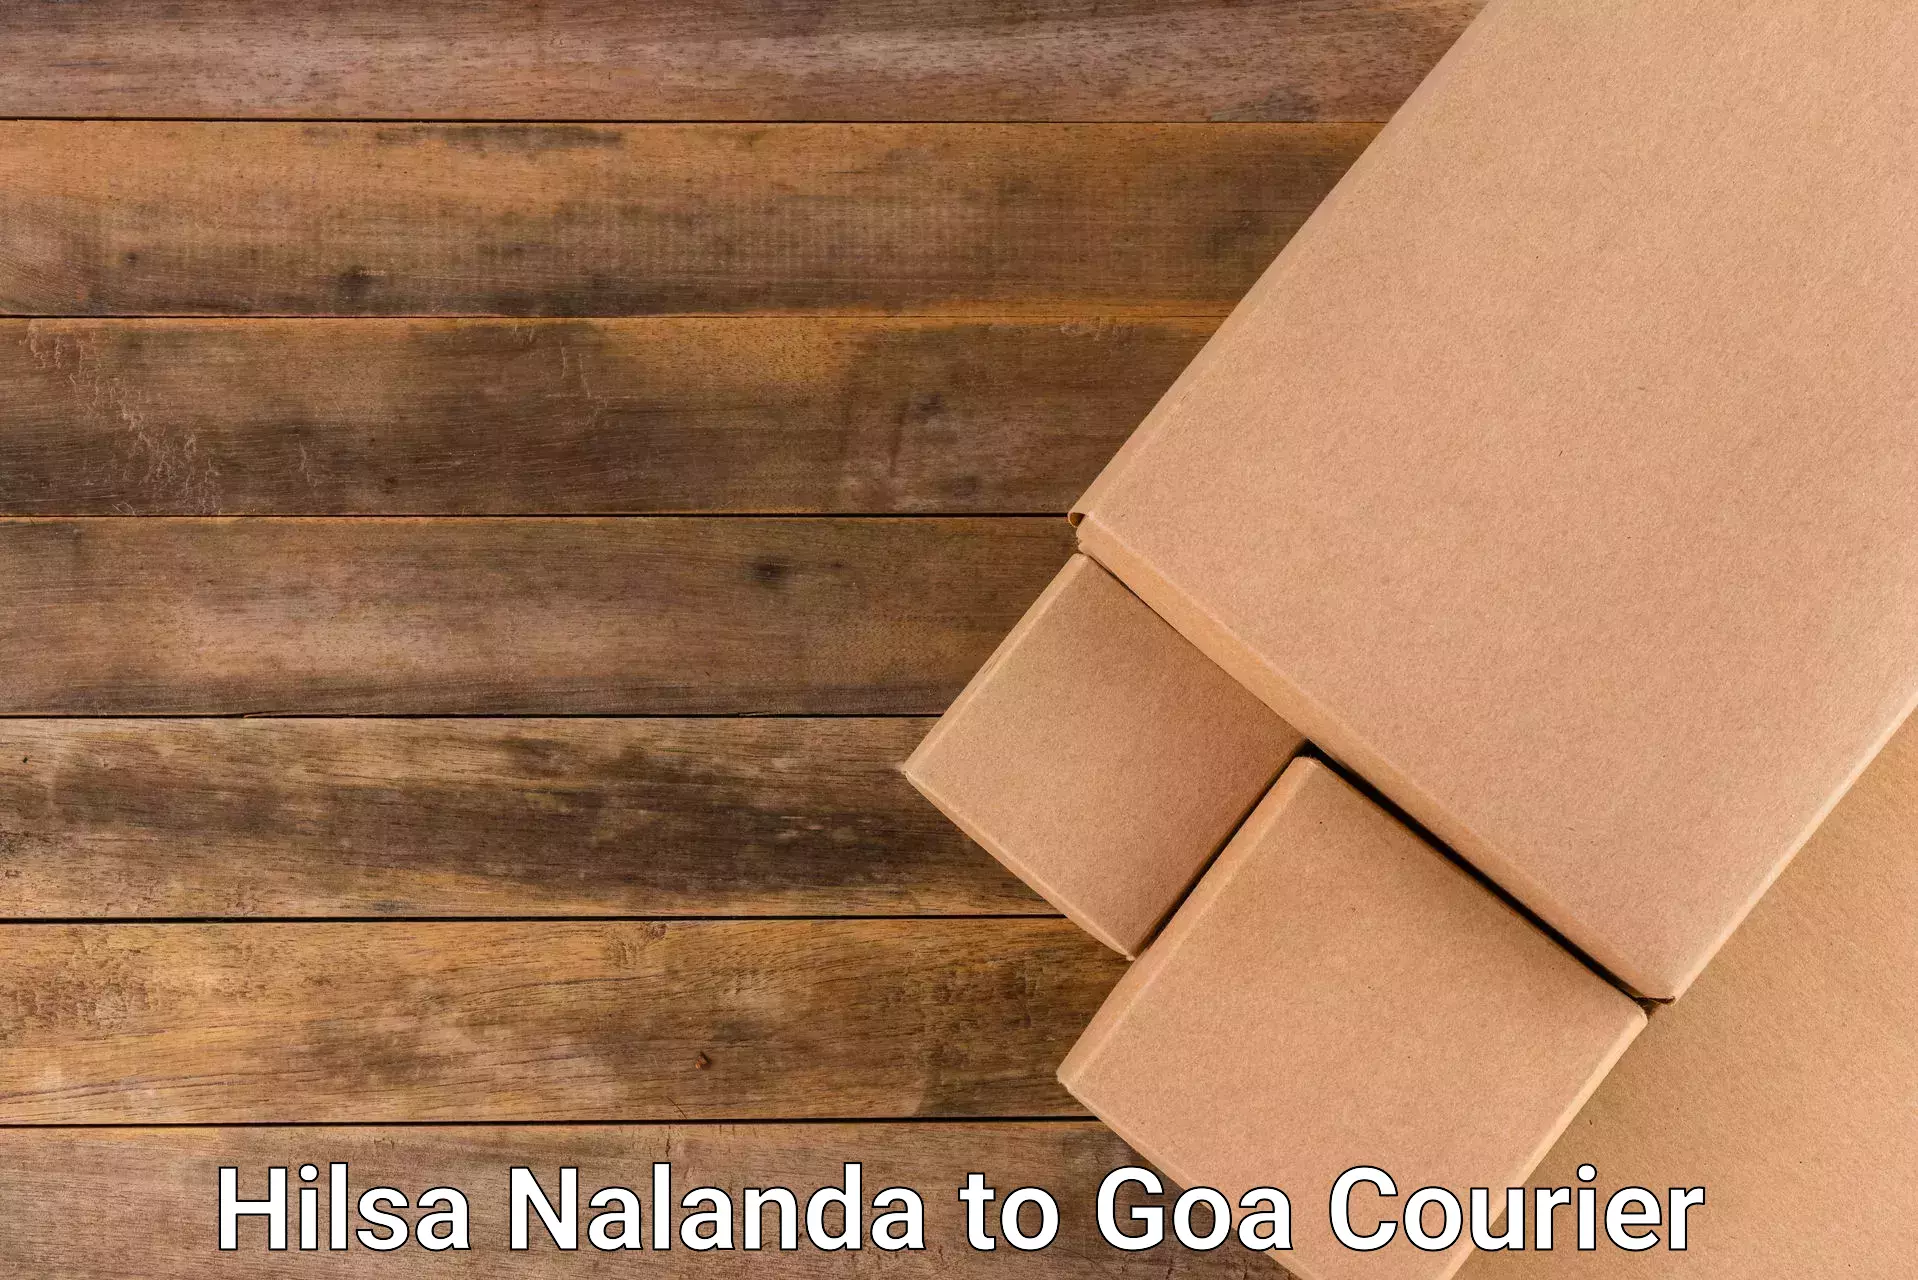 Specialized courier services Hilsa Nalanda to Ponda